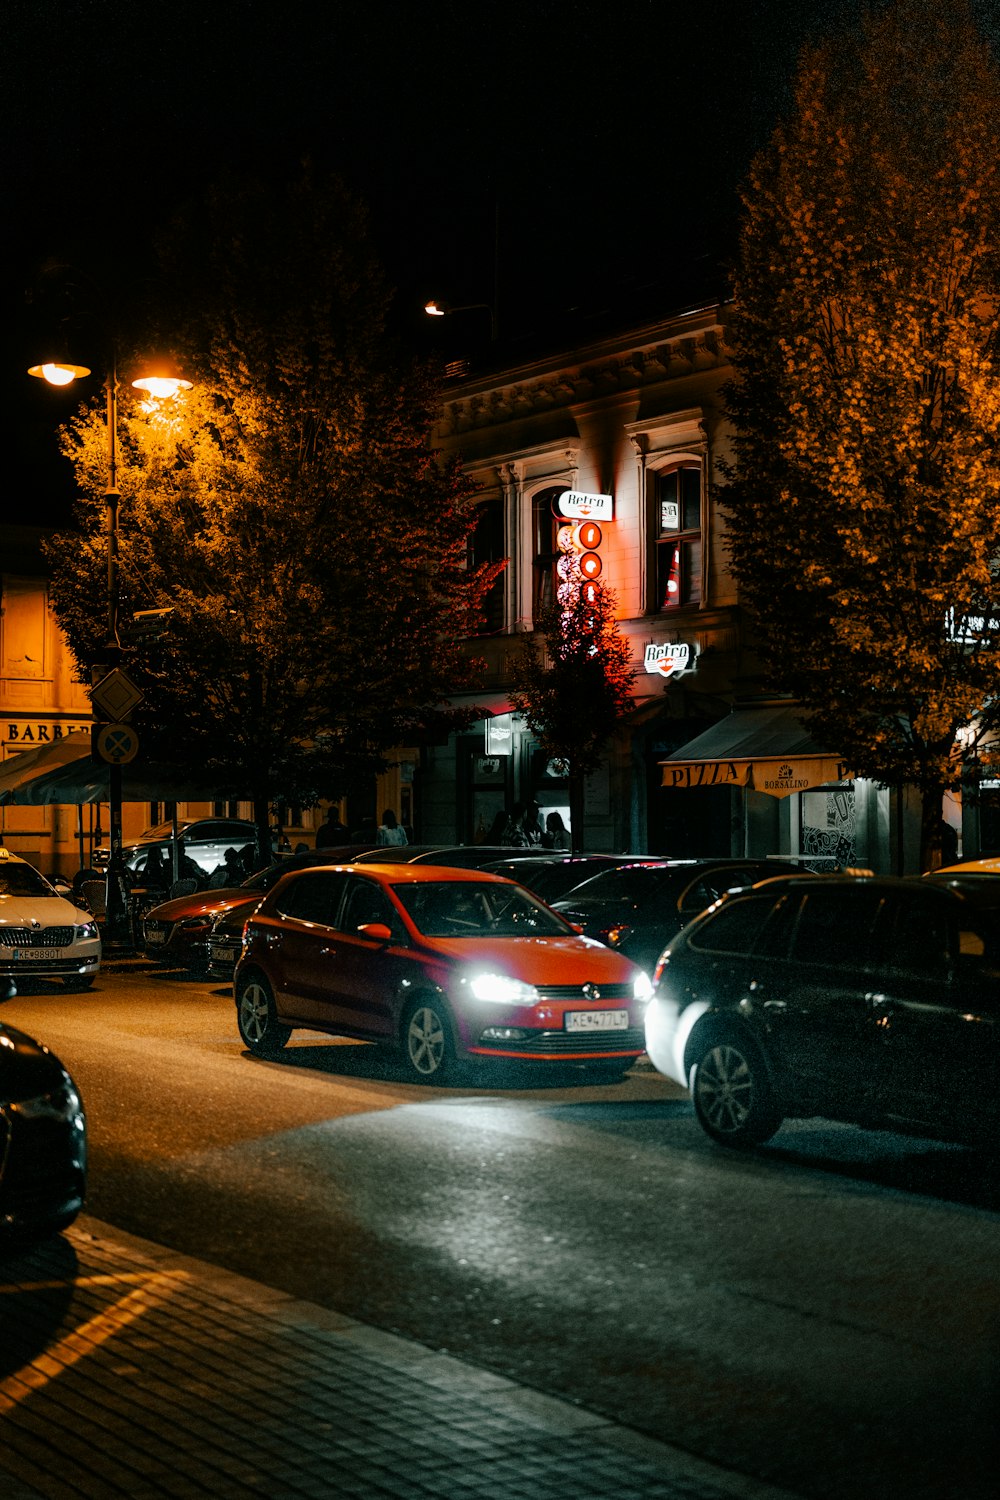 Una strada cittadina di notte con le auto parcheggiate sul ciglio della strada